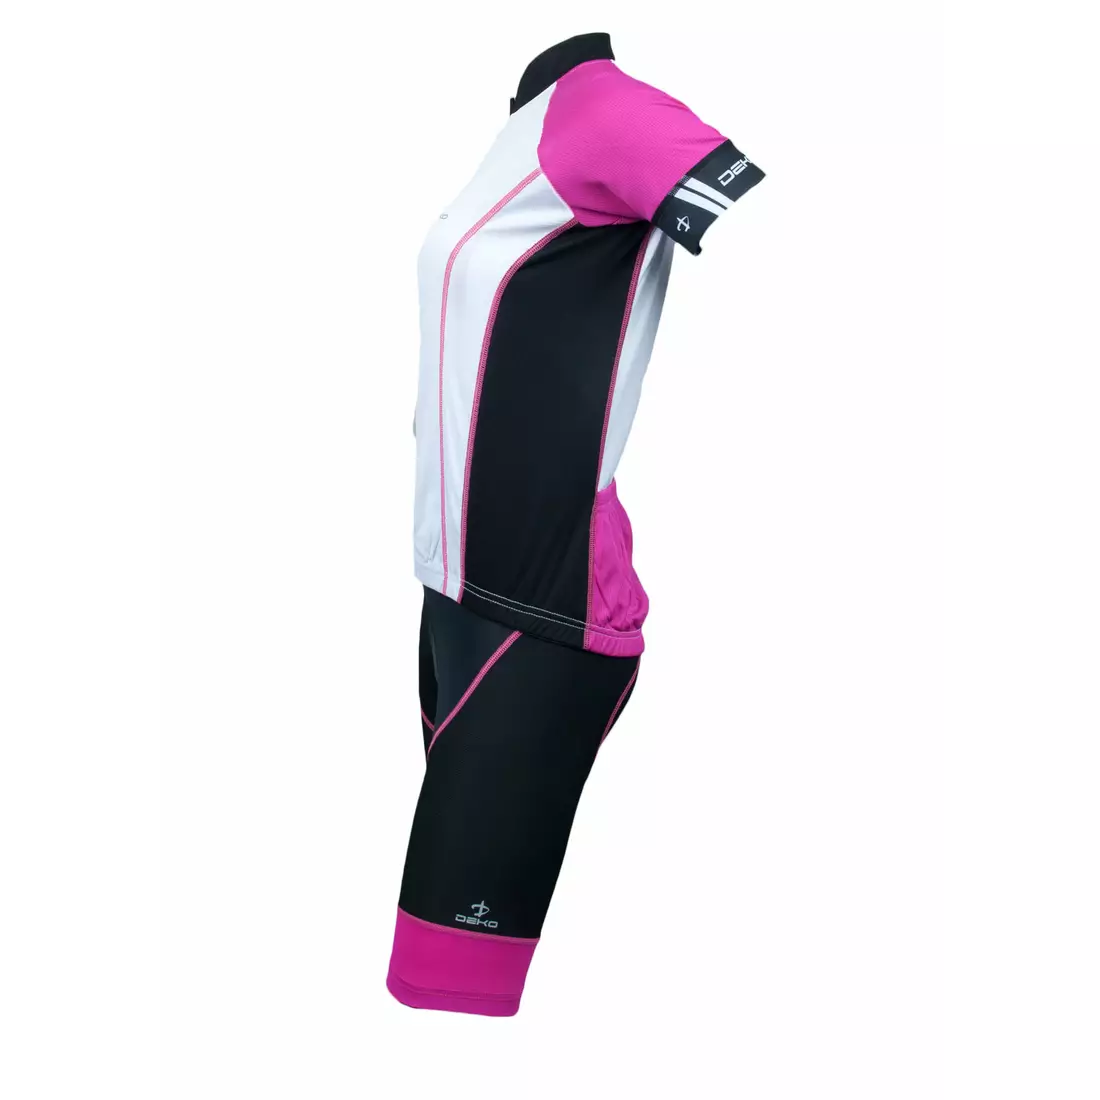 Dámsky cyklistický set DEKO ASPIDE: dres + šortky, podväzok, čierno-ružový